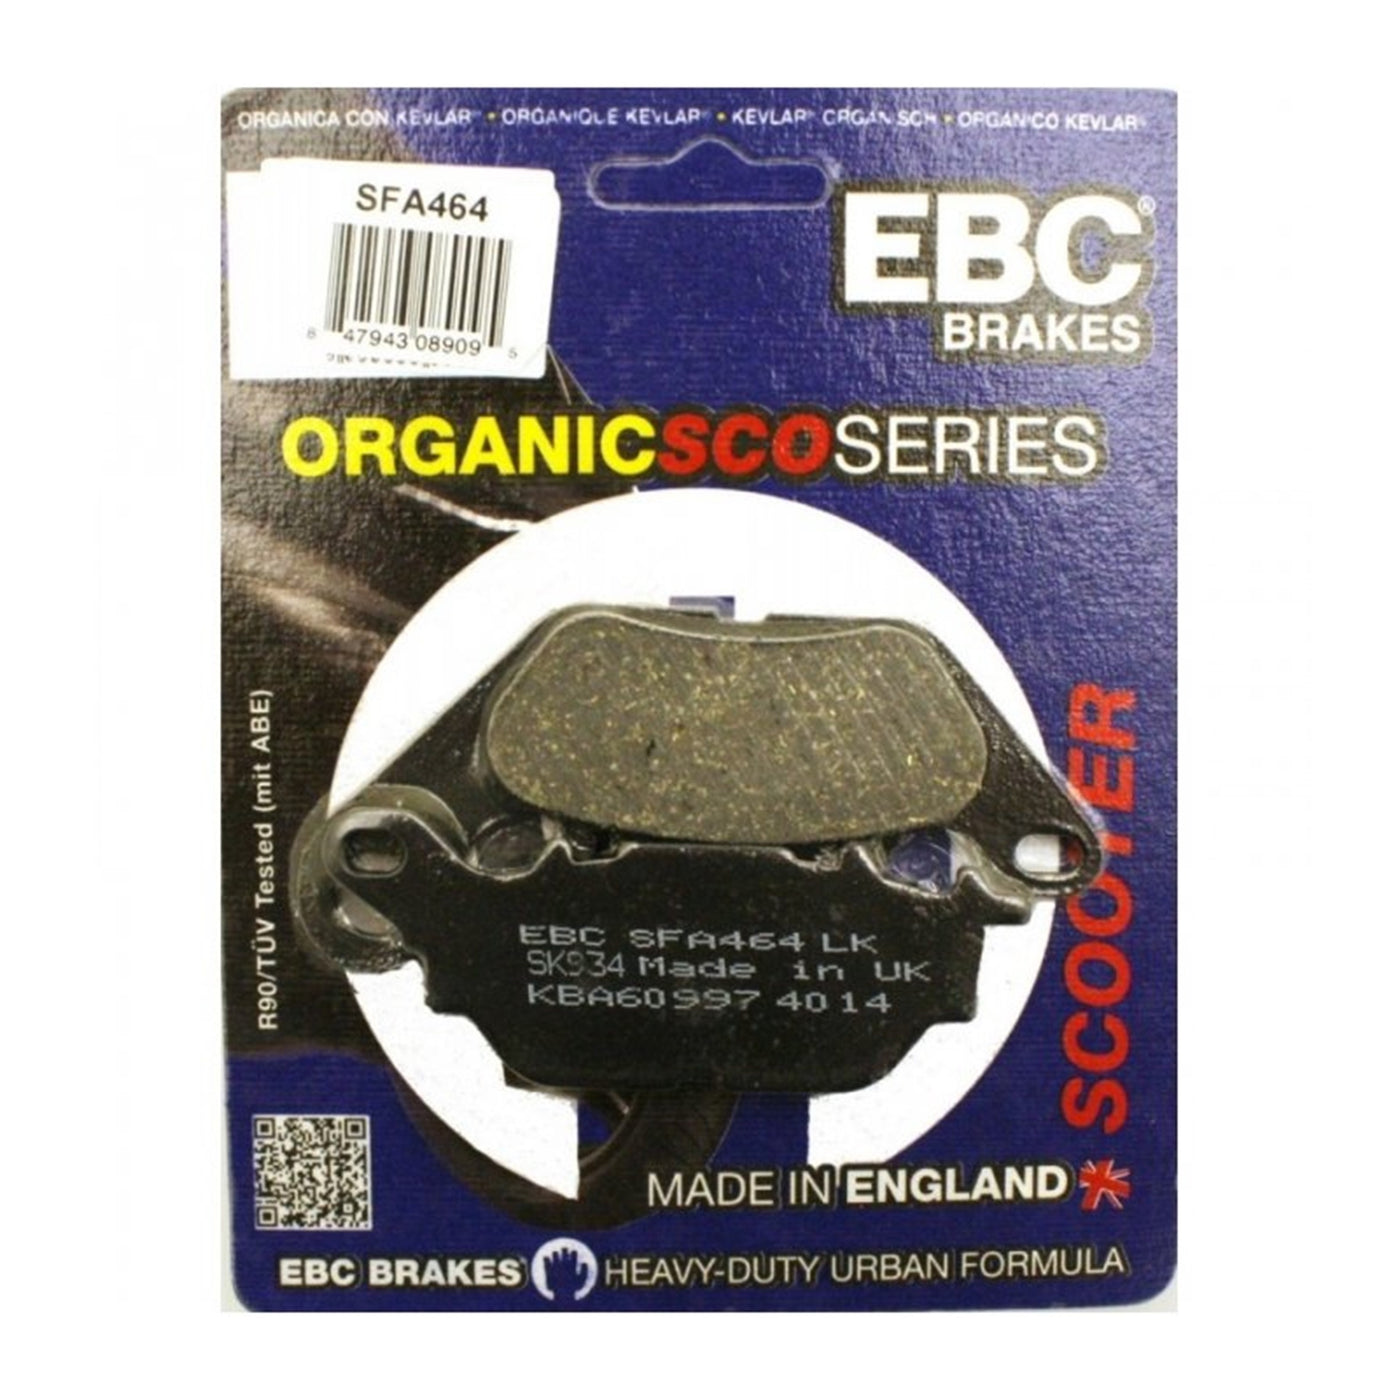 EBC Brakes SFA464 Scooter Organic Brake Pad Set